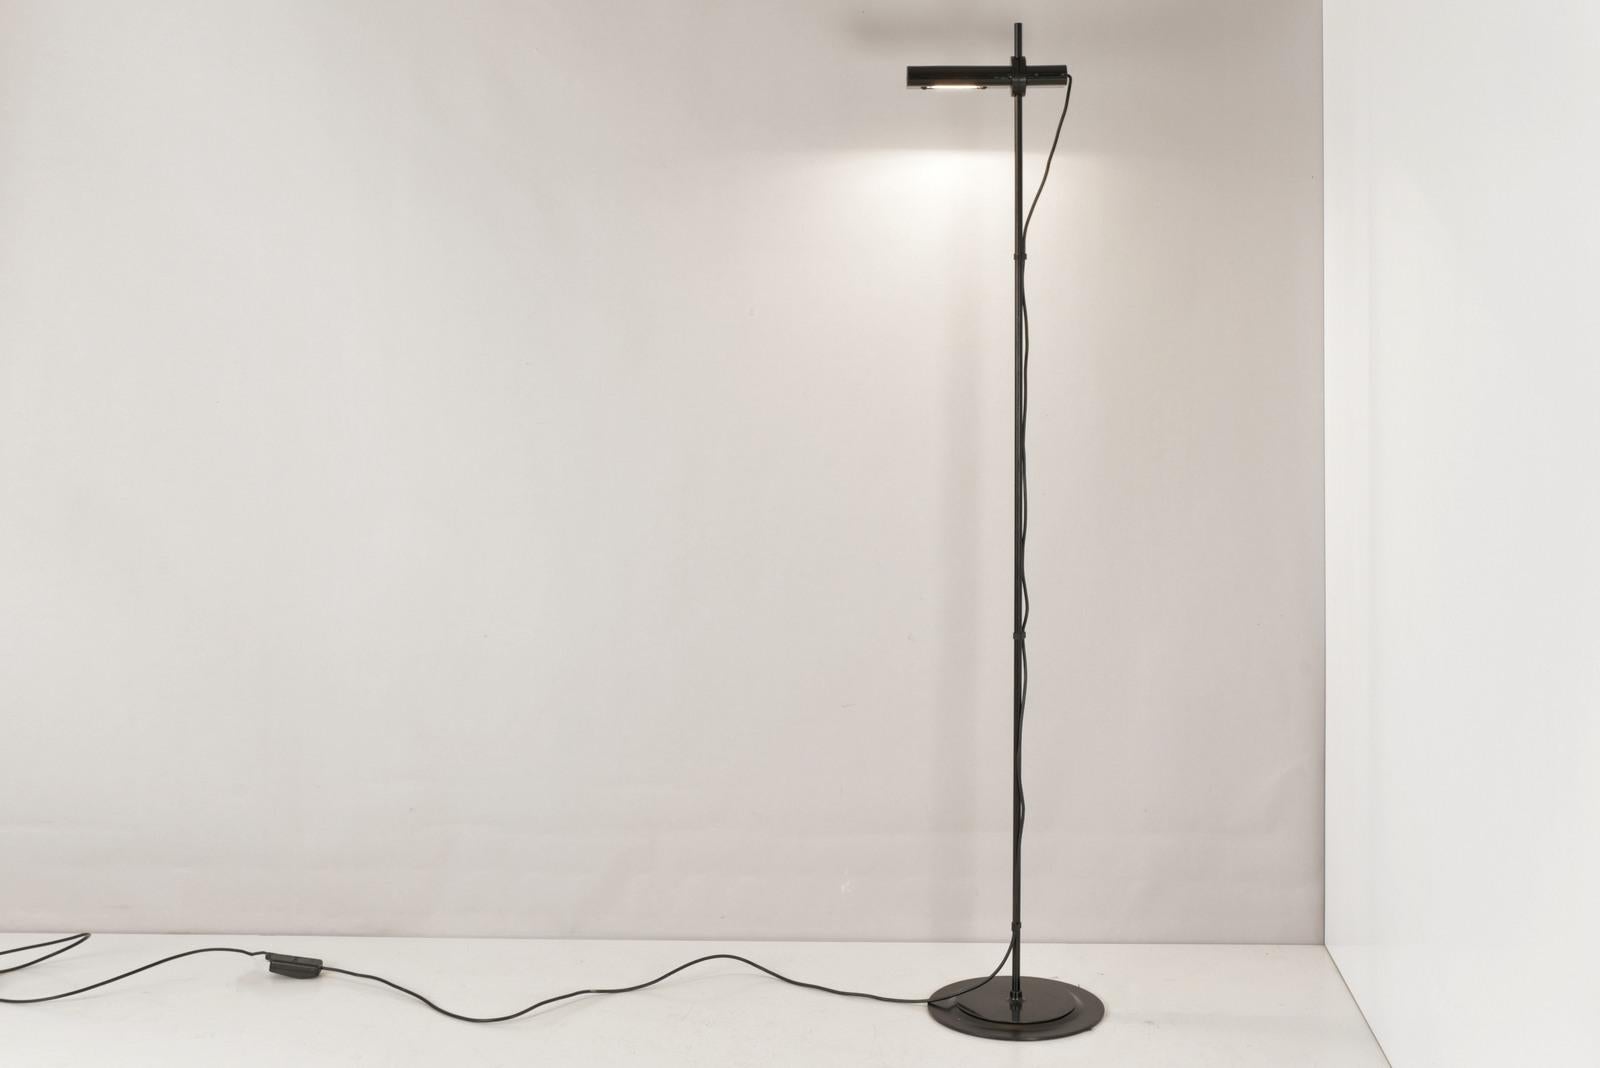 Italian Aton Terra Floor Lamp by Ernesto Gismondi for Artemide, Italy - 1980 For Sale